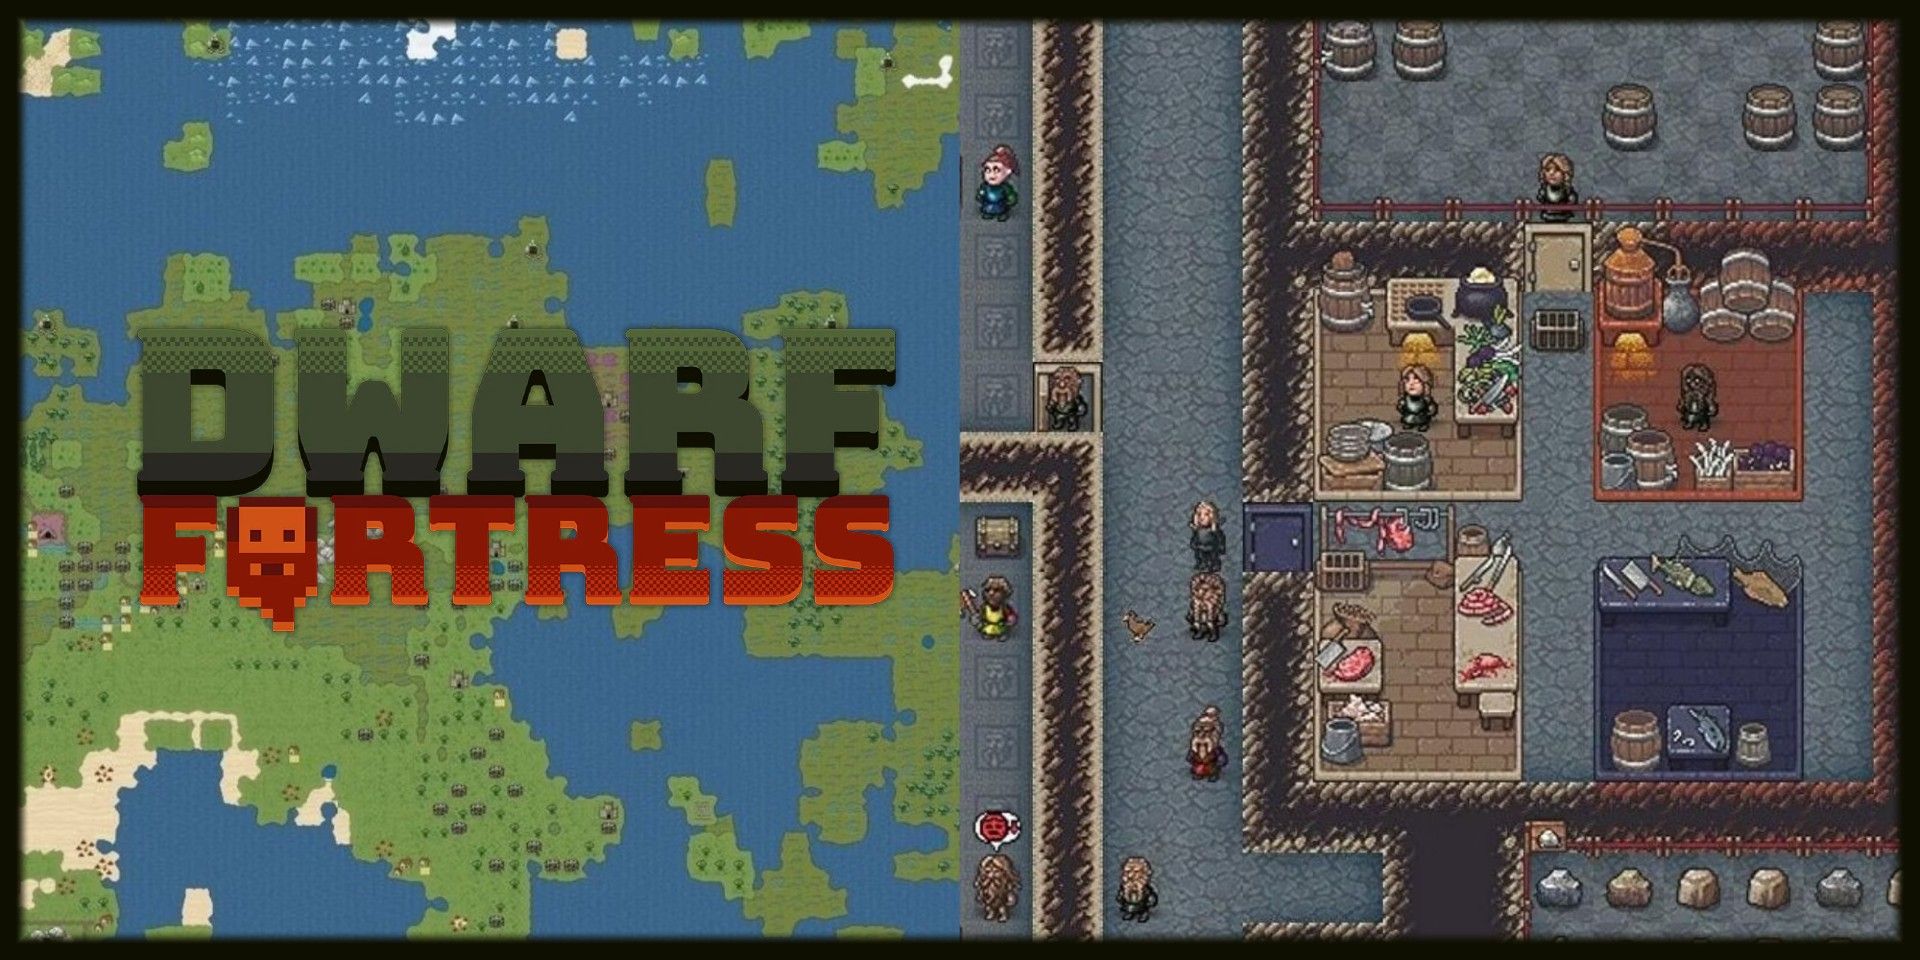 dwarf fortress embark skills strategy